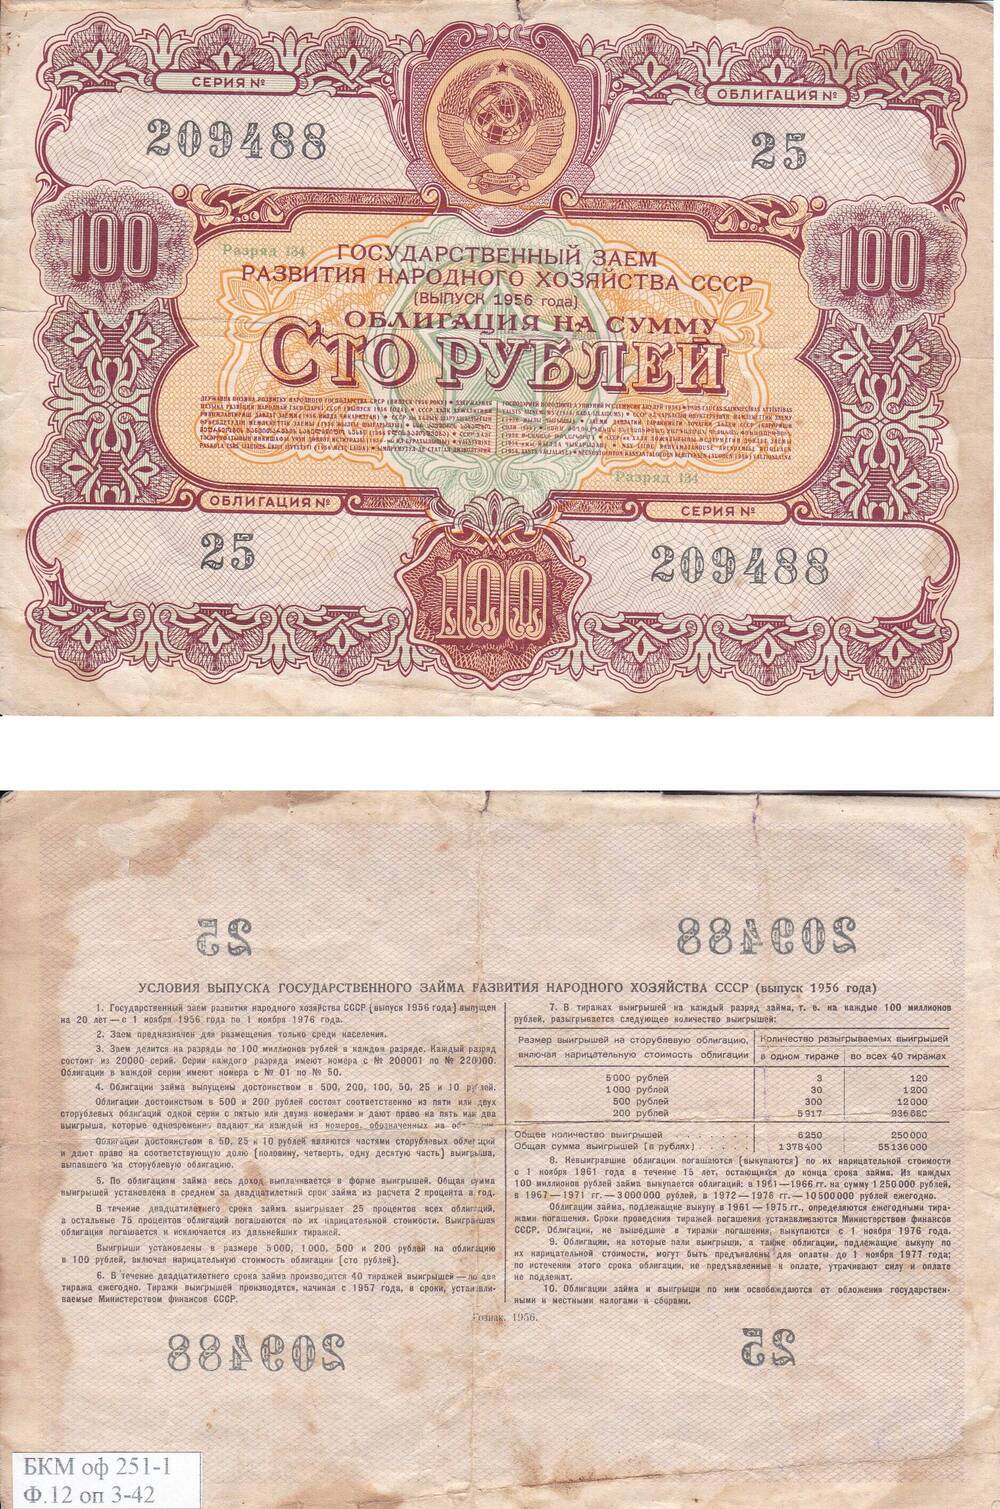 Облигация Государственного займа развития народного хозяйства СССР на сумму Сто рублей №209488